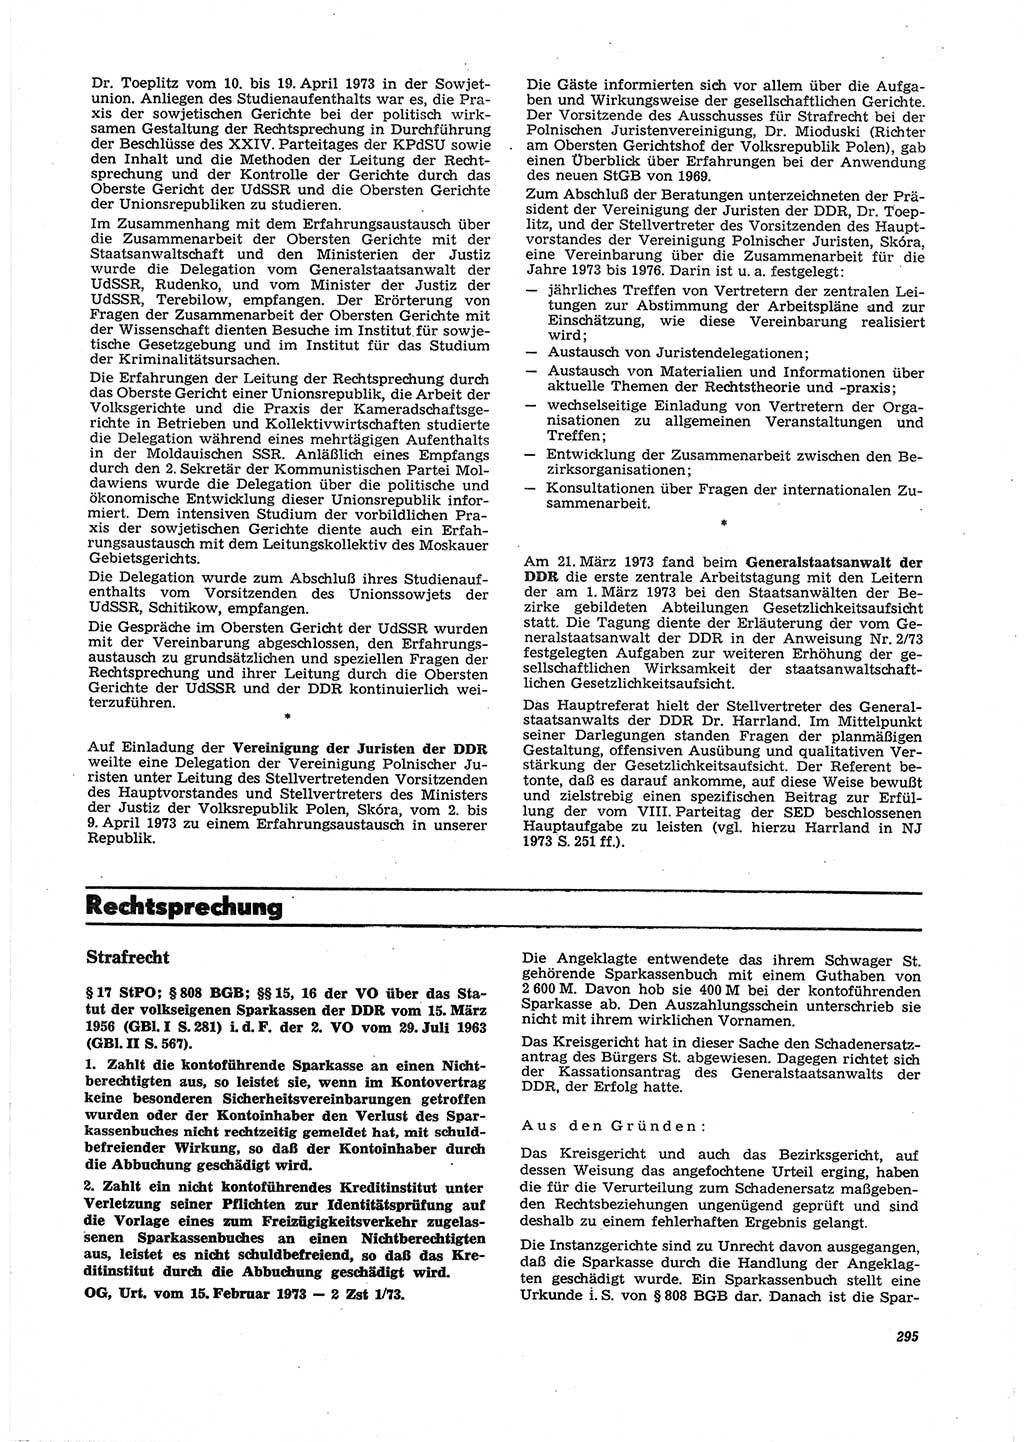 Neue Justiz (NJ), Zeitschrift für Recht und Rechtswissenschaft [Deutsche Demokratische Republik (DDR)], 27. Jahrgang 1973, Seite 295 (NJ DDR 1973, S. 295)